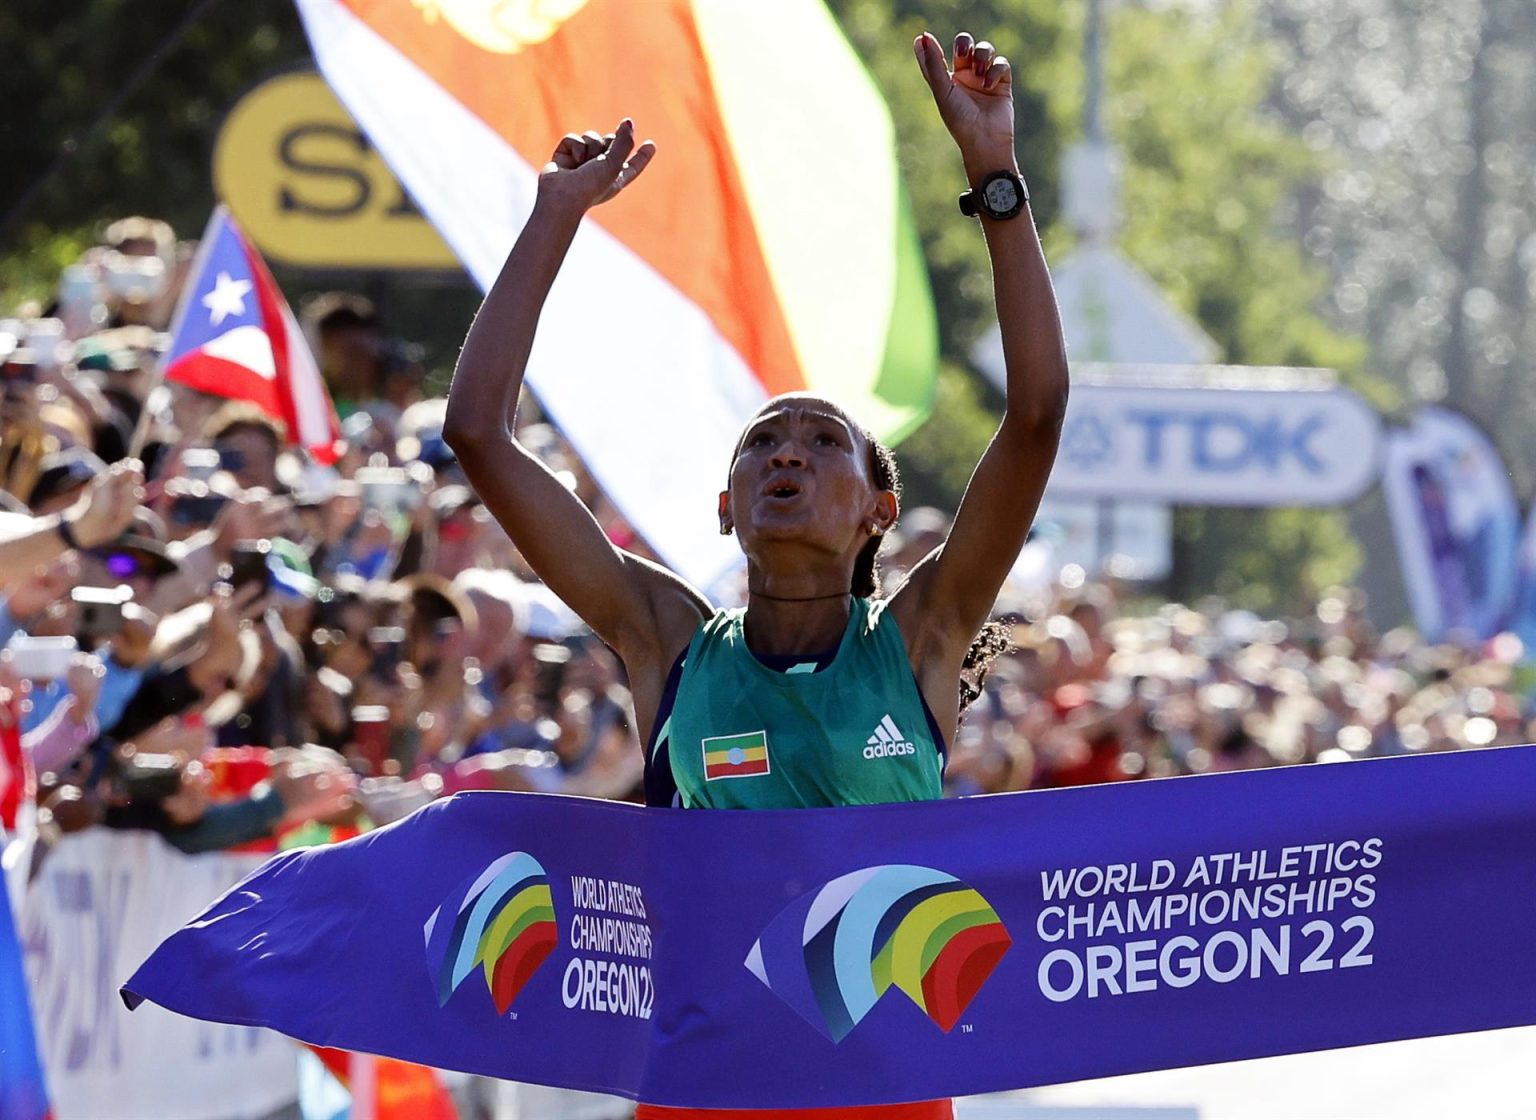 Gotytom Gebreslase de Etiopía celebra mientras cruza la línea de meta para ganar la carrera de maratón de mujeres en el Campeonato Mundial de Atletismo Oregon22 en Eugene. EFE/EPA/Erik S. Lesser